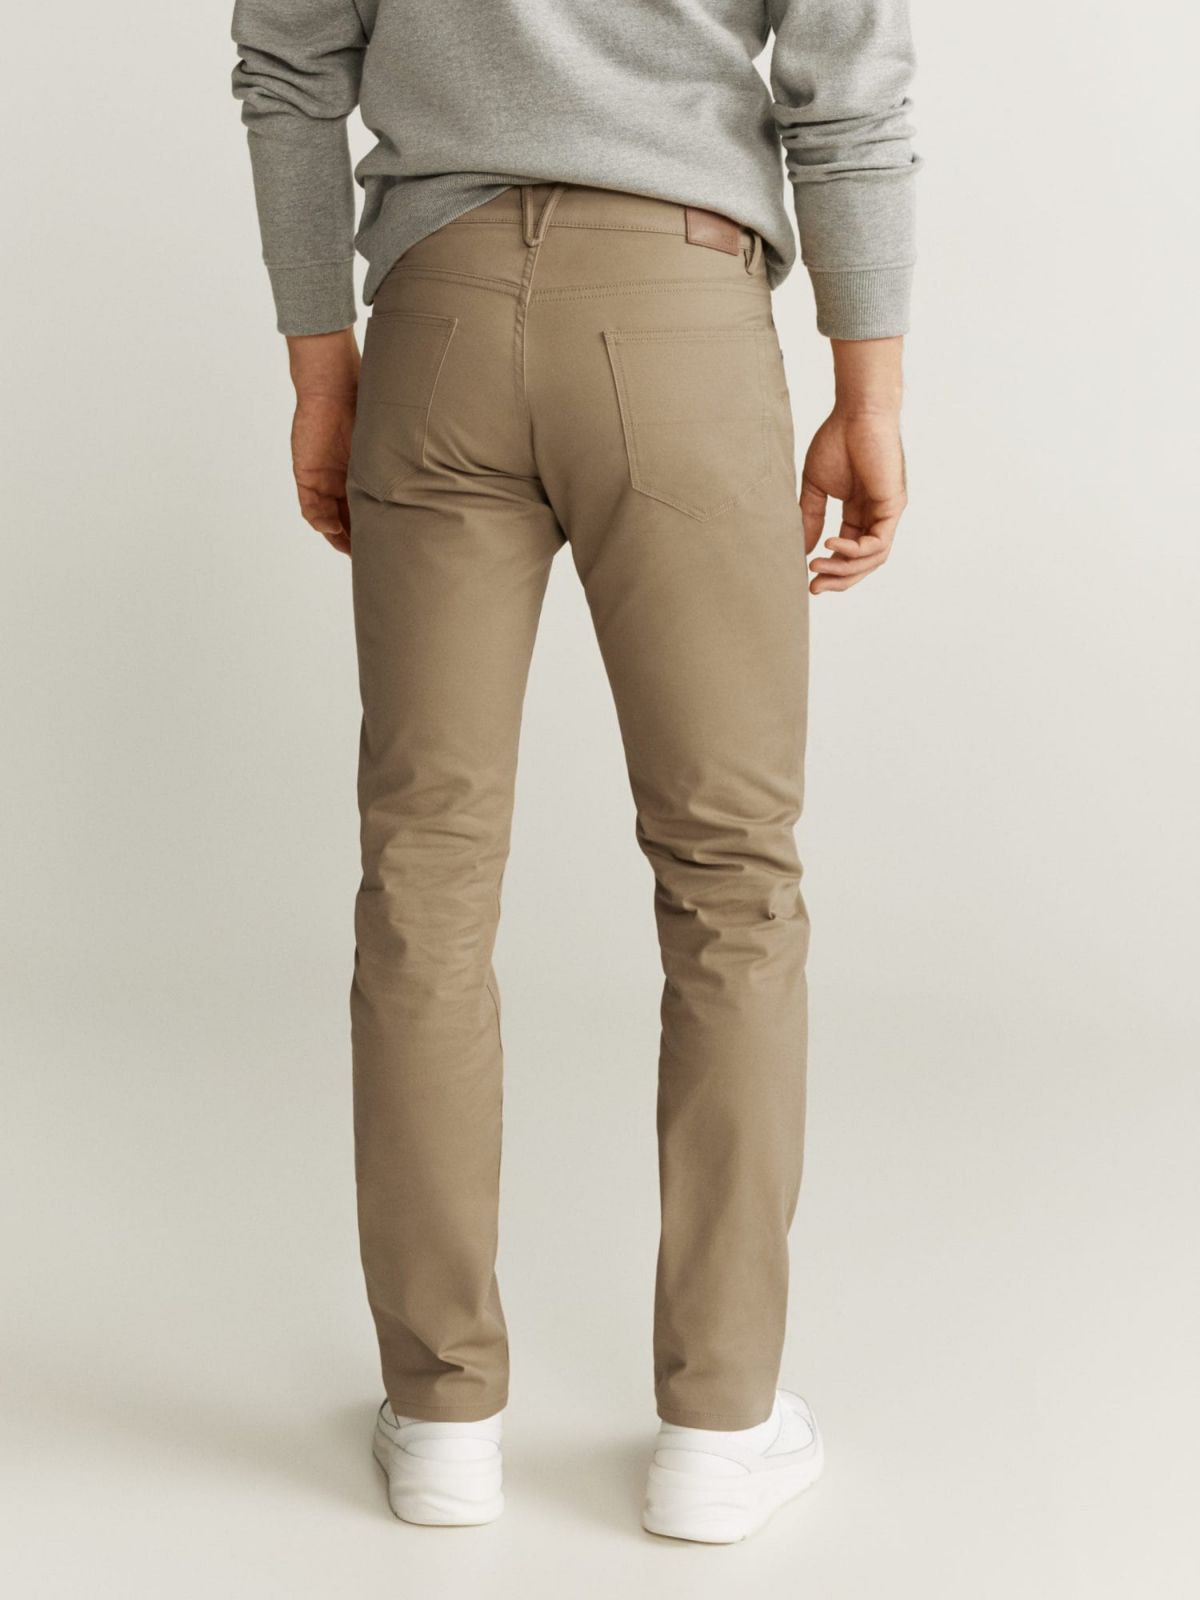  מכנסיים דמוי ג'ינס בגזרת Slim fit של MANGO